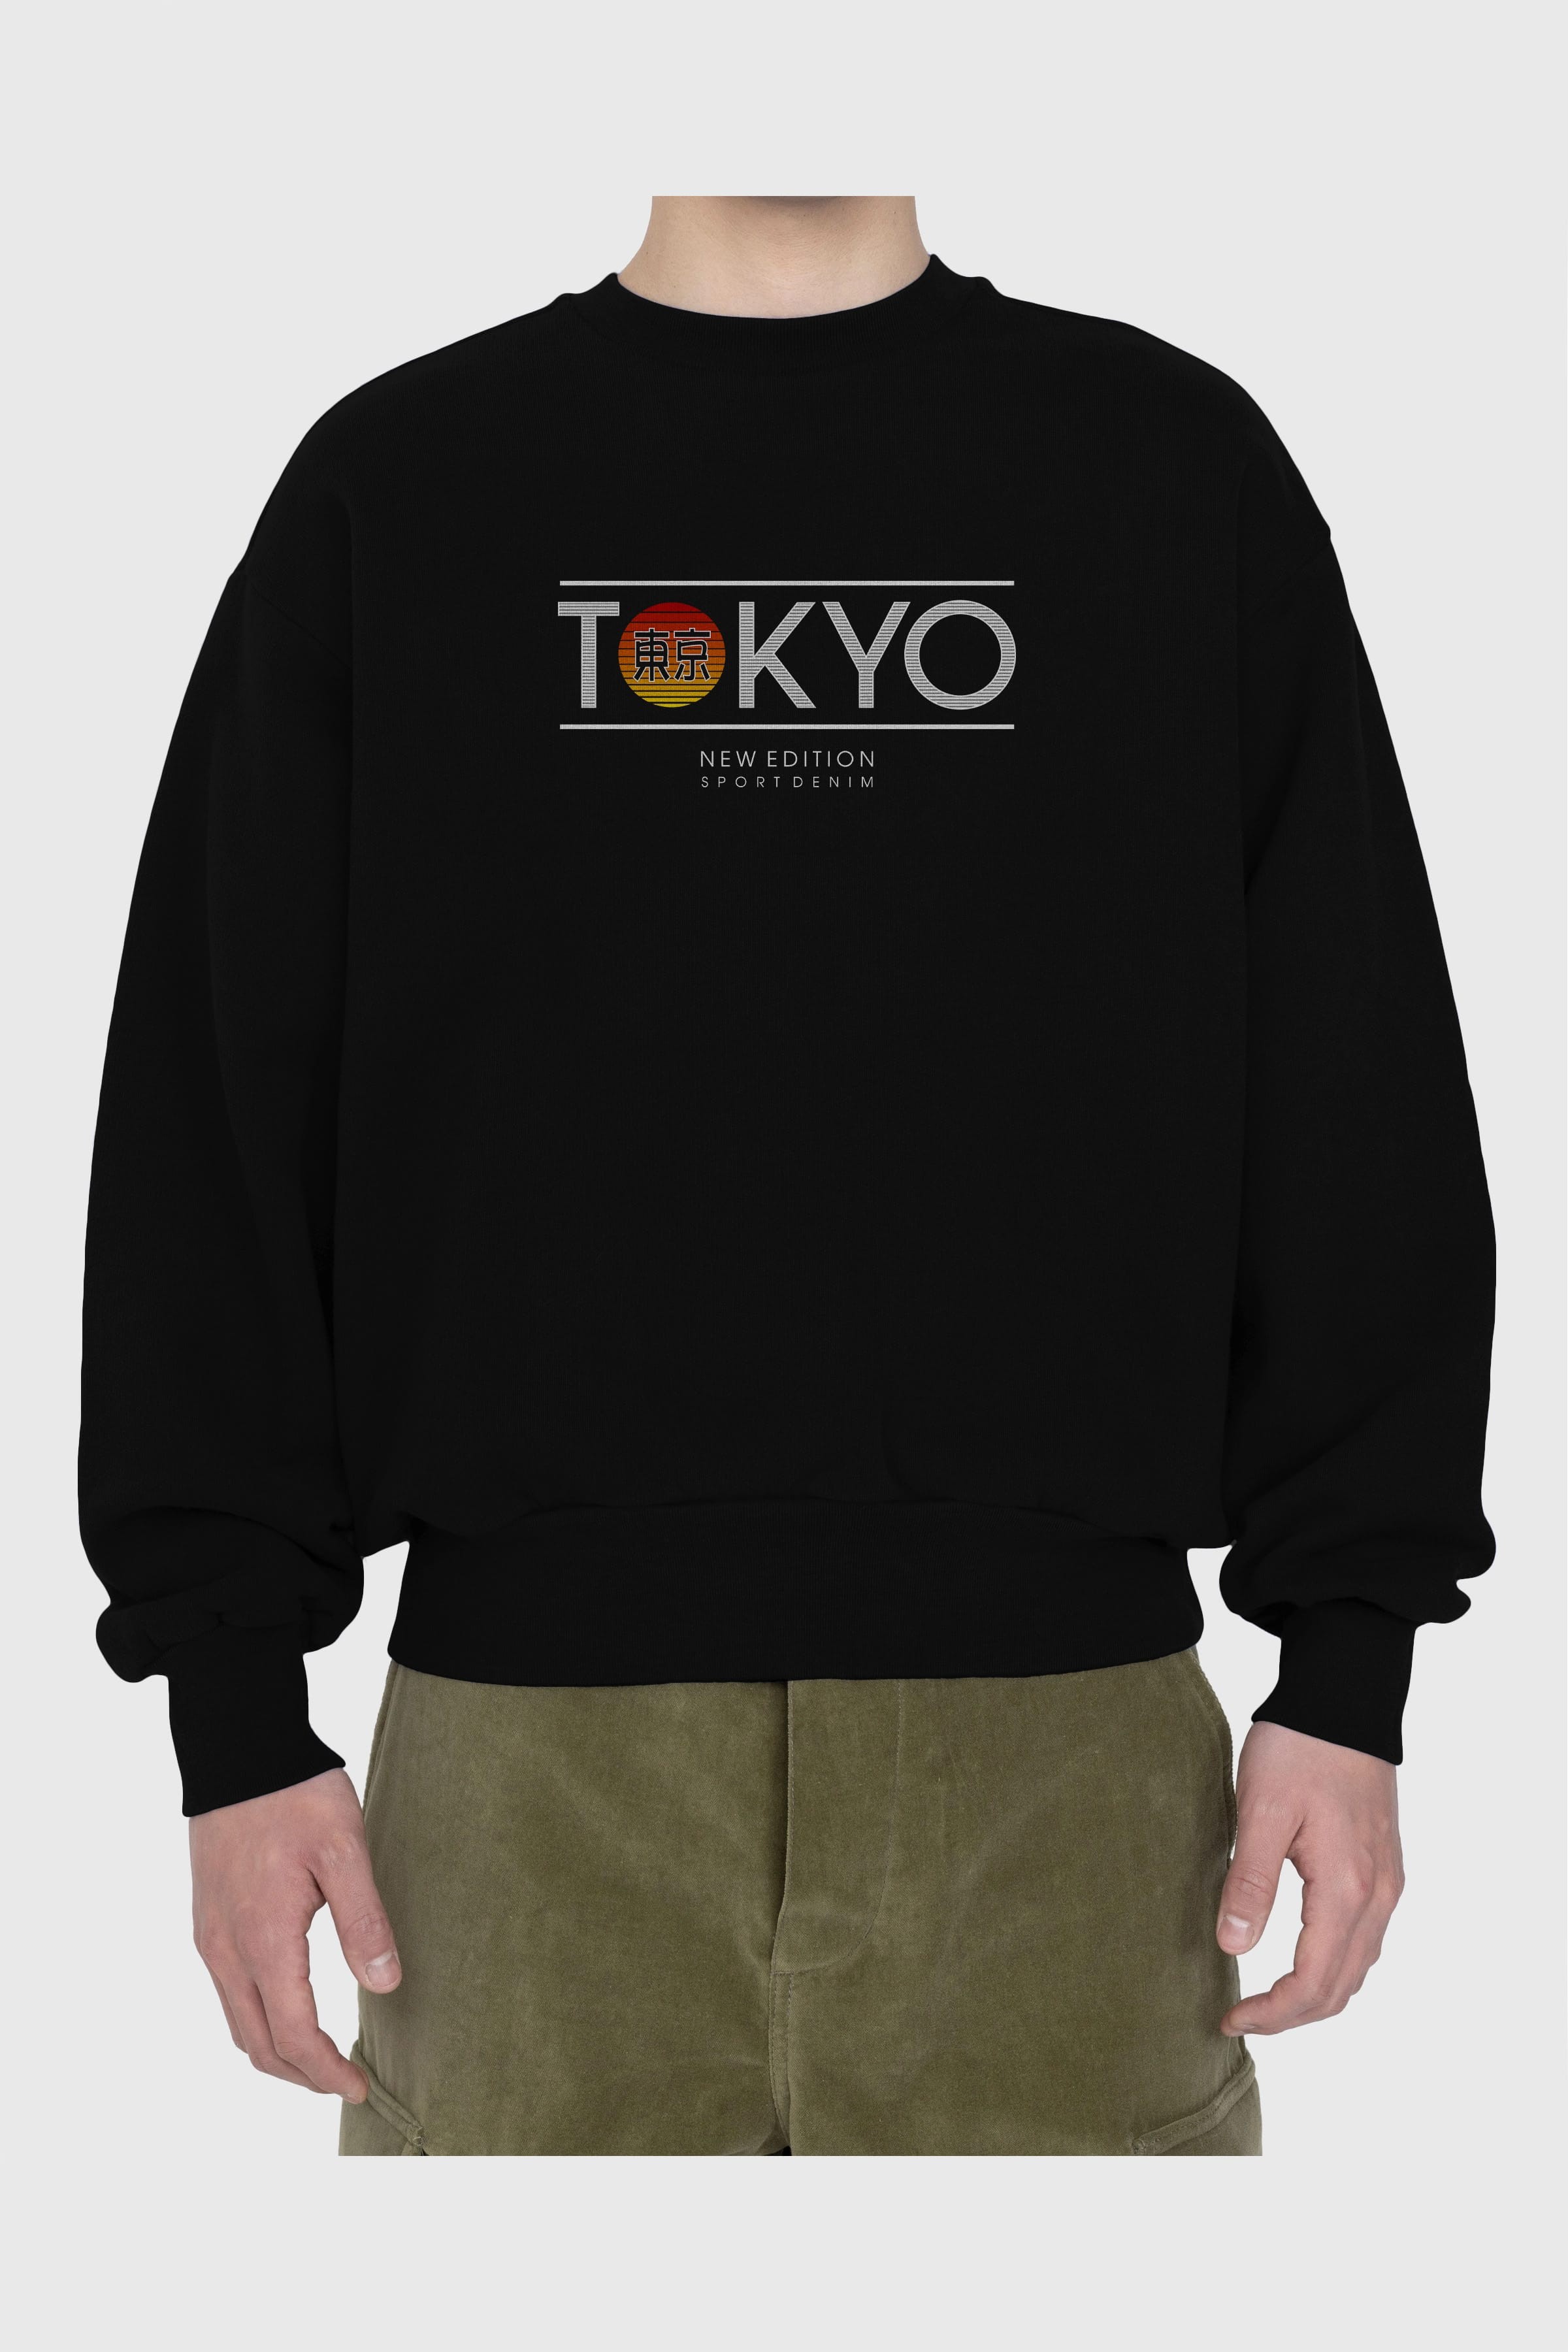 Tokyo Sport Ön Baskılı Oversize Sweatshirt Erkek Kadın Unisex